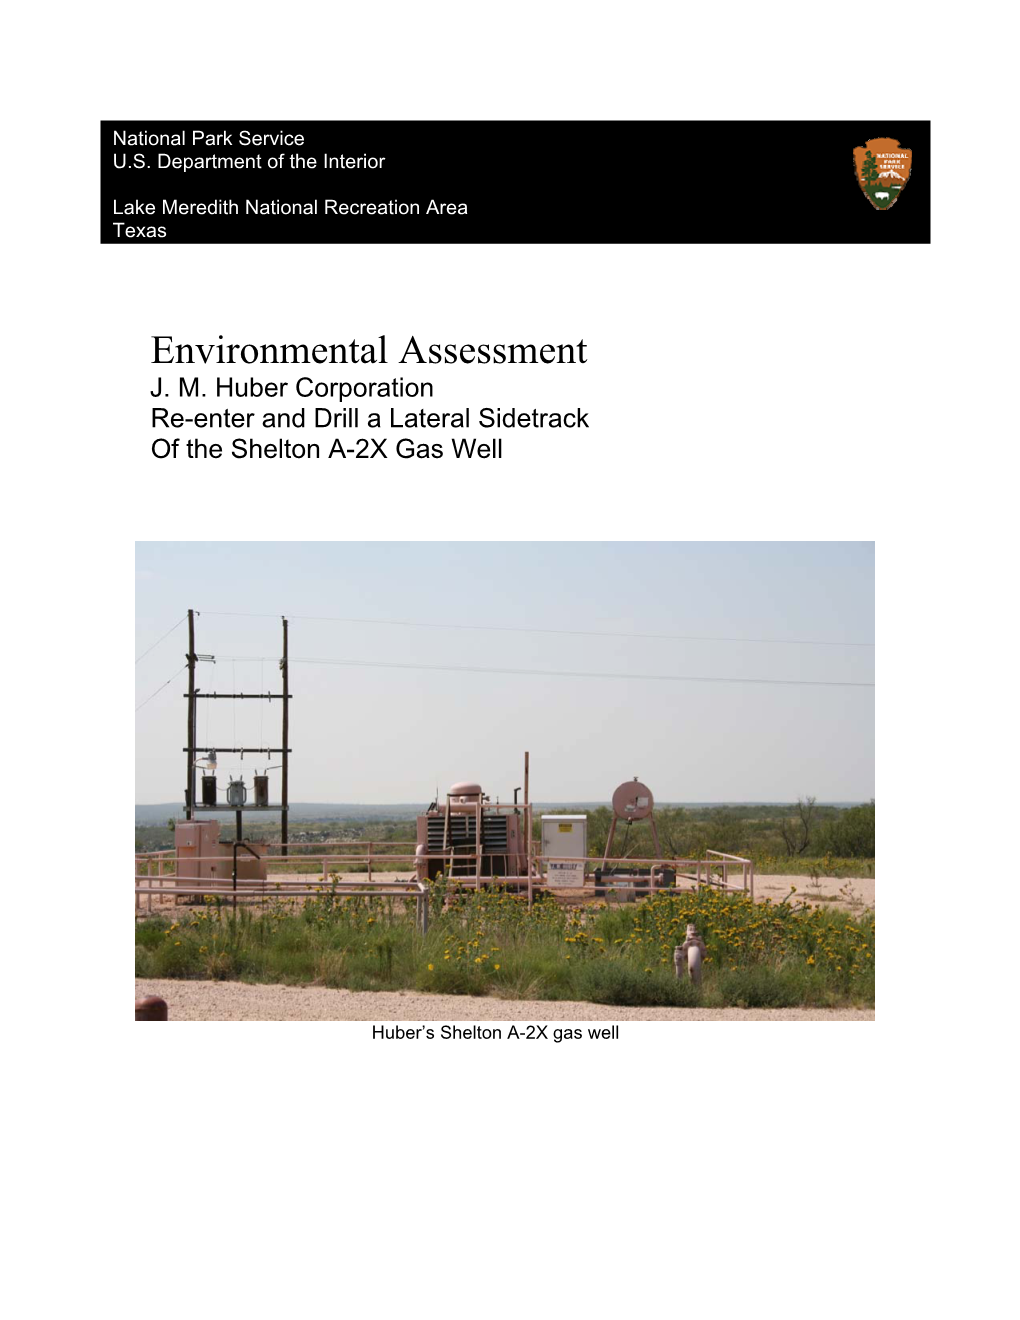 Environmental Assessment J